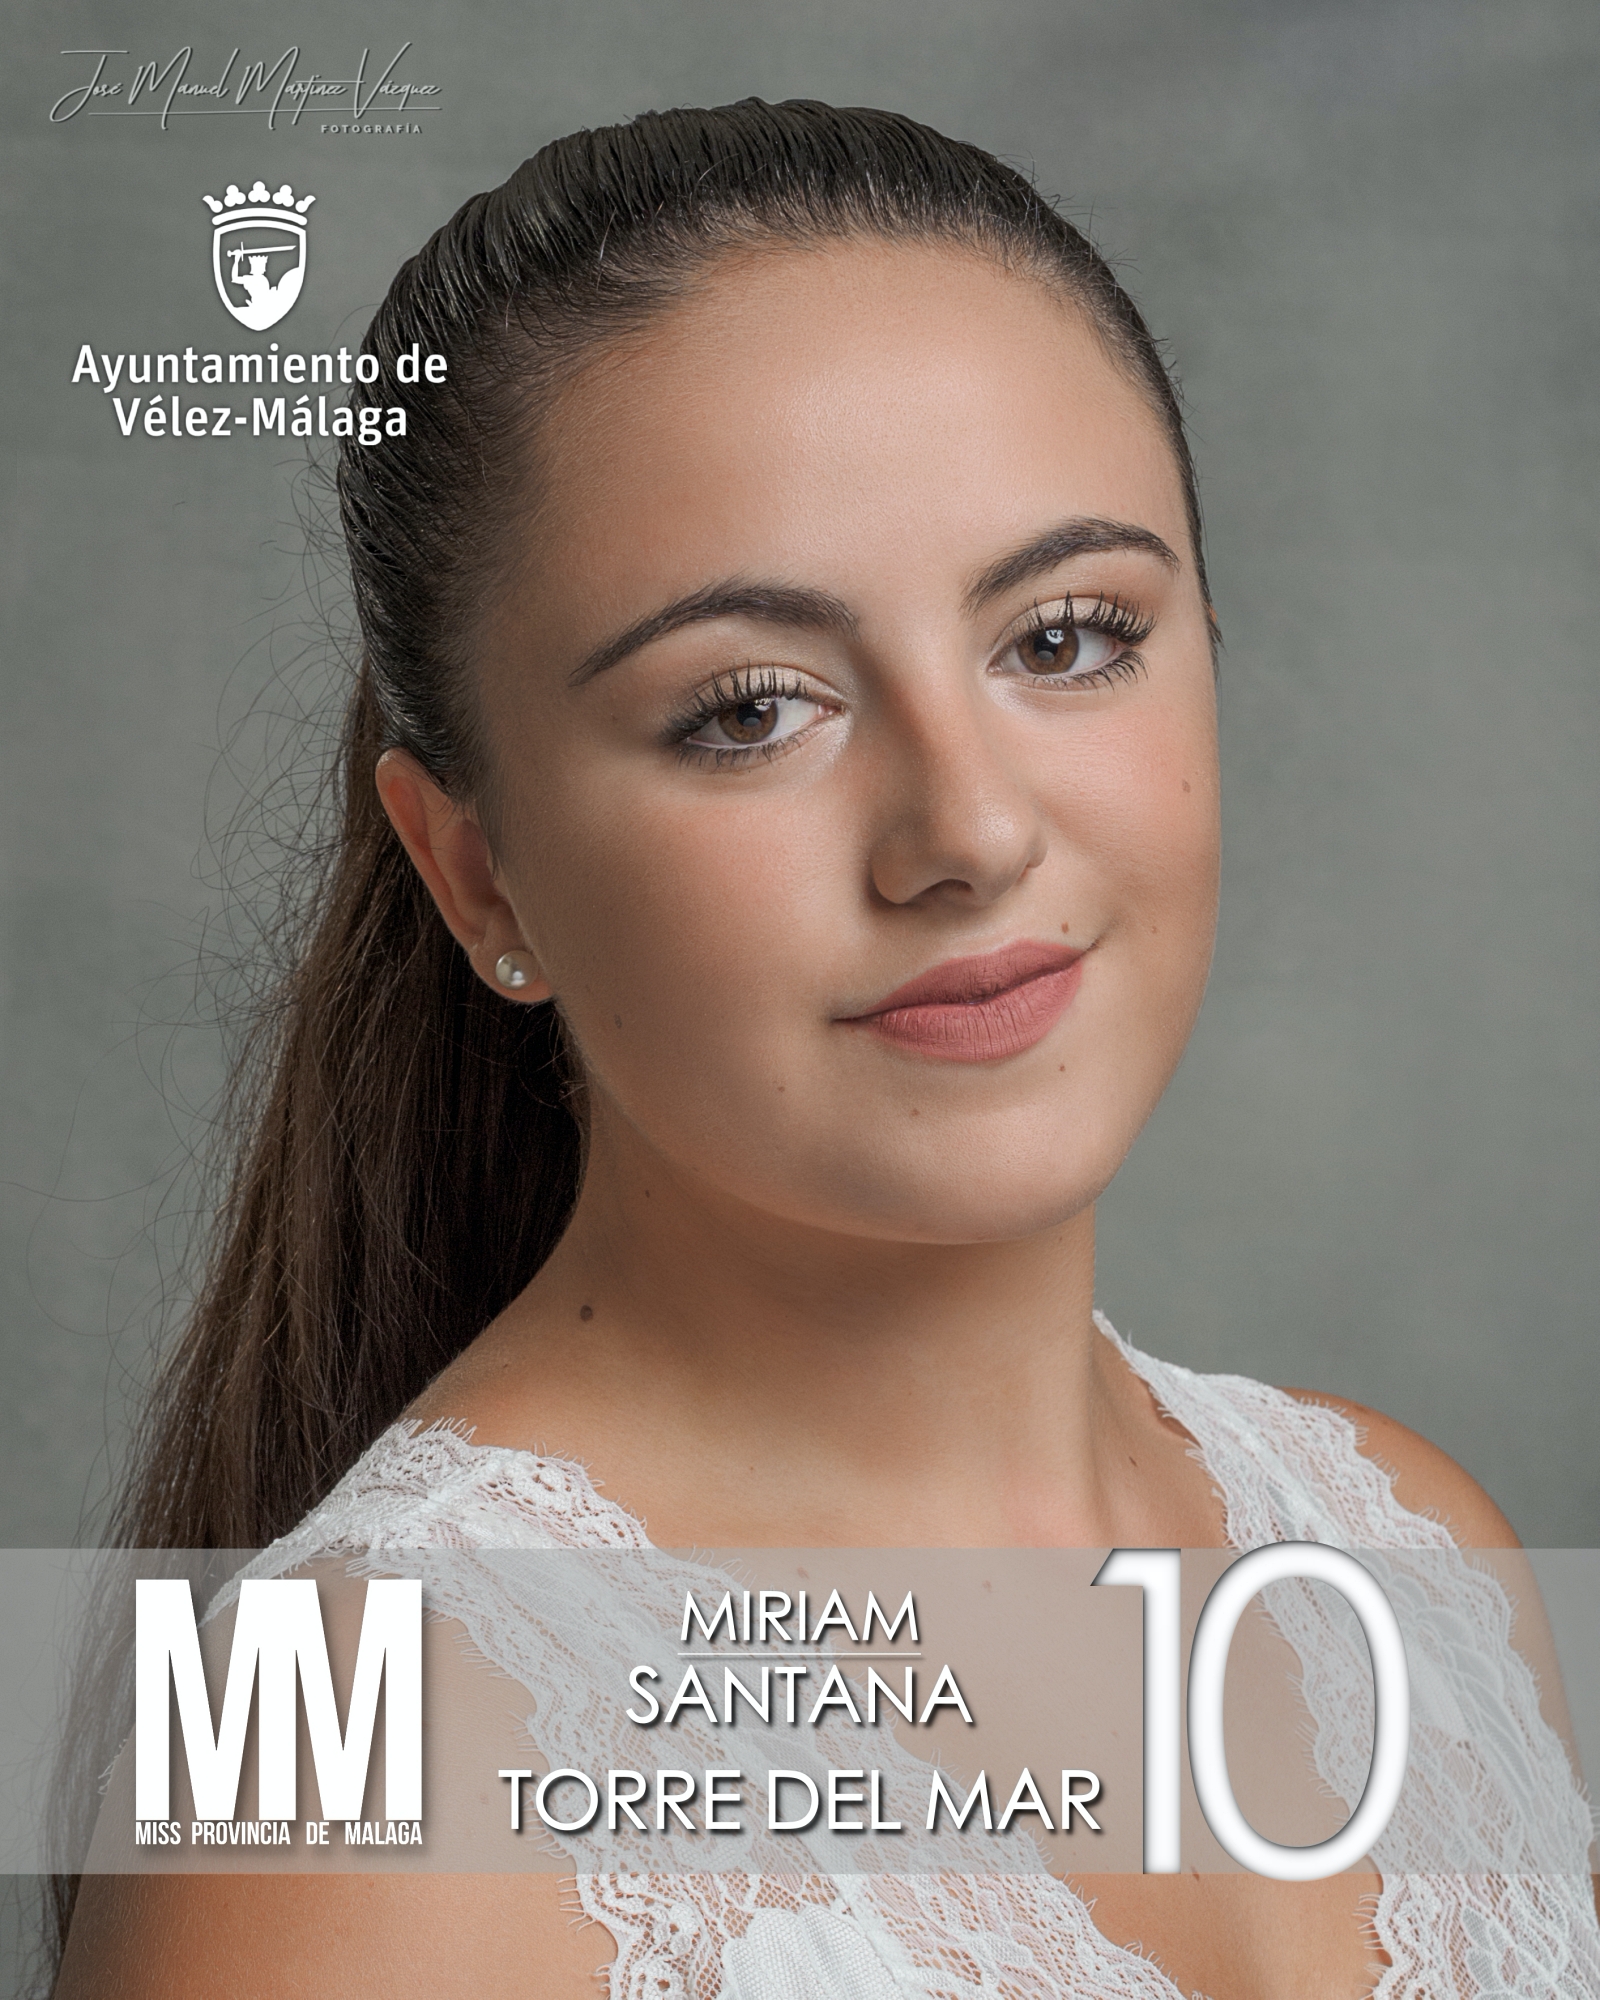 10 Miriam Santana Torre del Mar Miss Velez Malaga 2022 Miss Provincia de Malaga